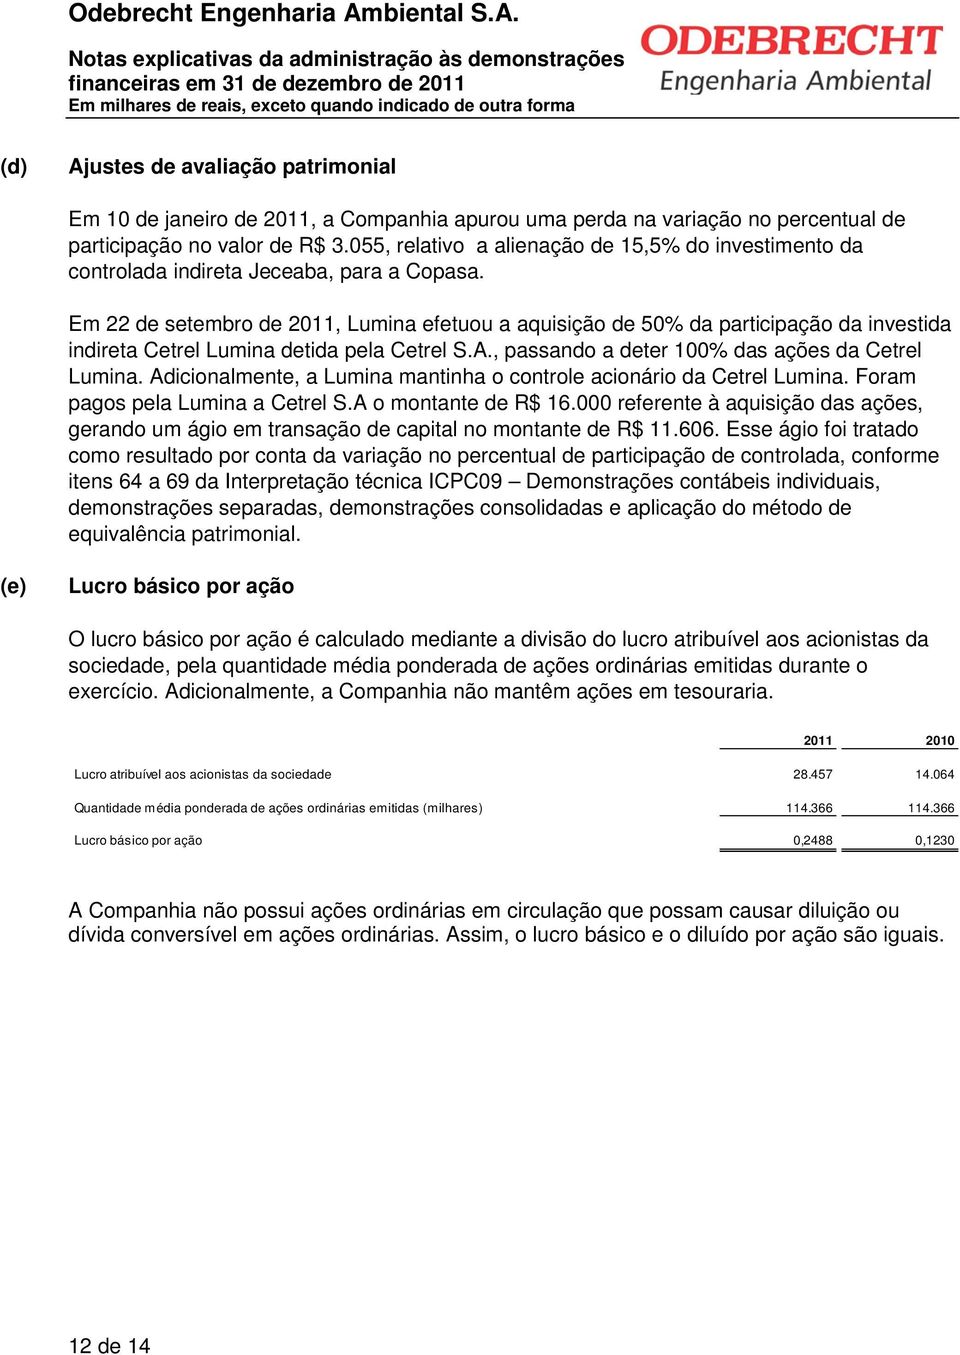 Em 22 de setembro de 2011, Lumina efetuou a aquisição de 50% da participação da investida indireta Cetrel Lumina detida pela Cetrel S.A., passando a deter 100% das ações da Cetrel Lumina.